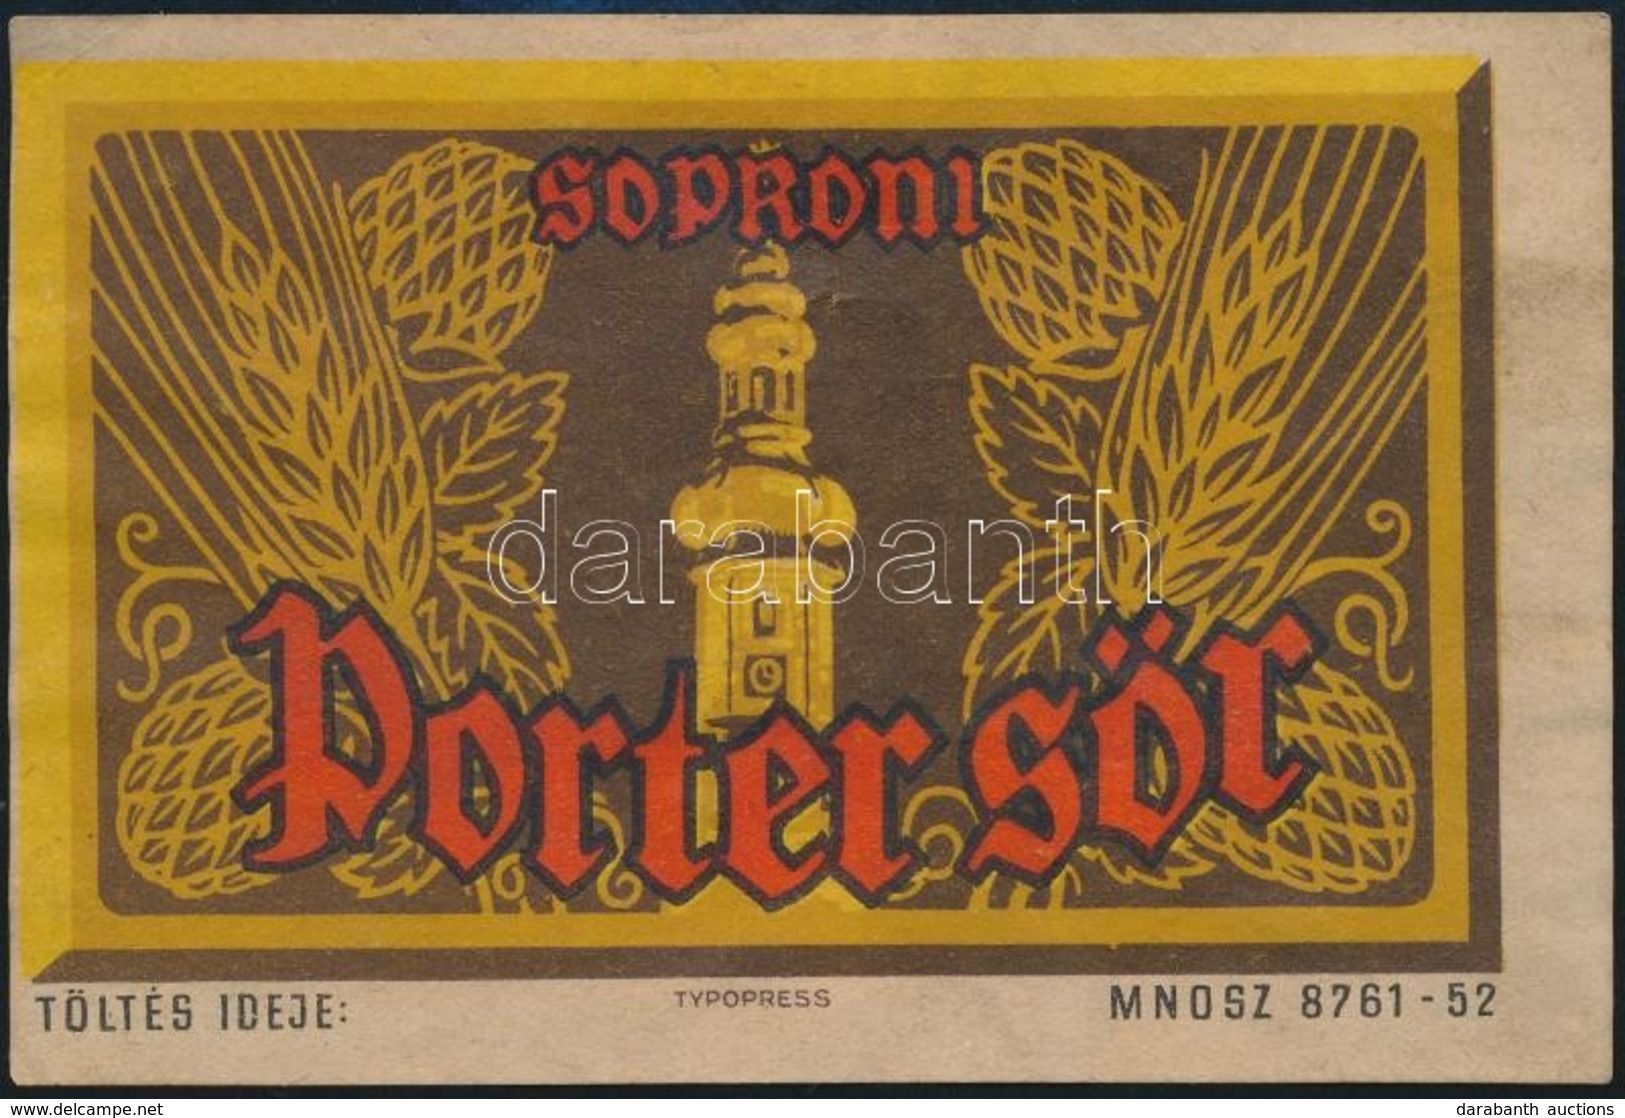 Soproni Porter Sör Sörcímke - Advertising